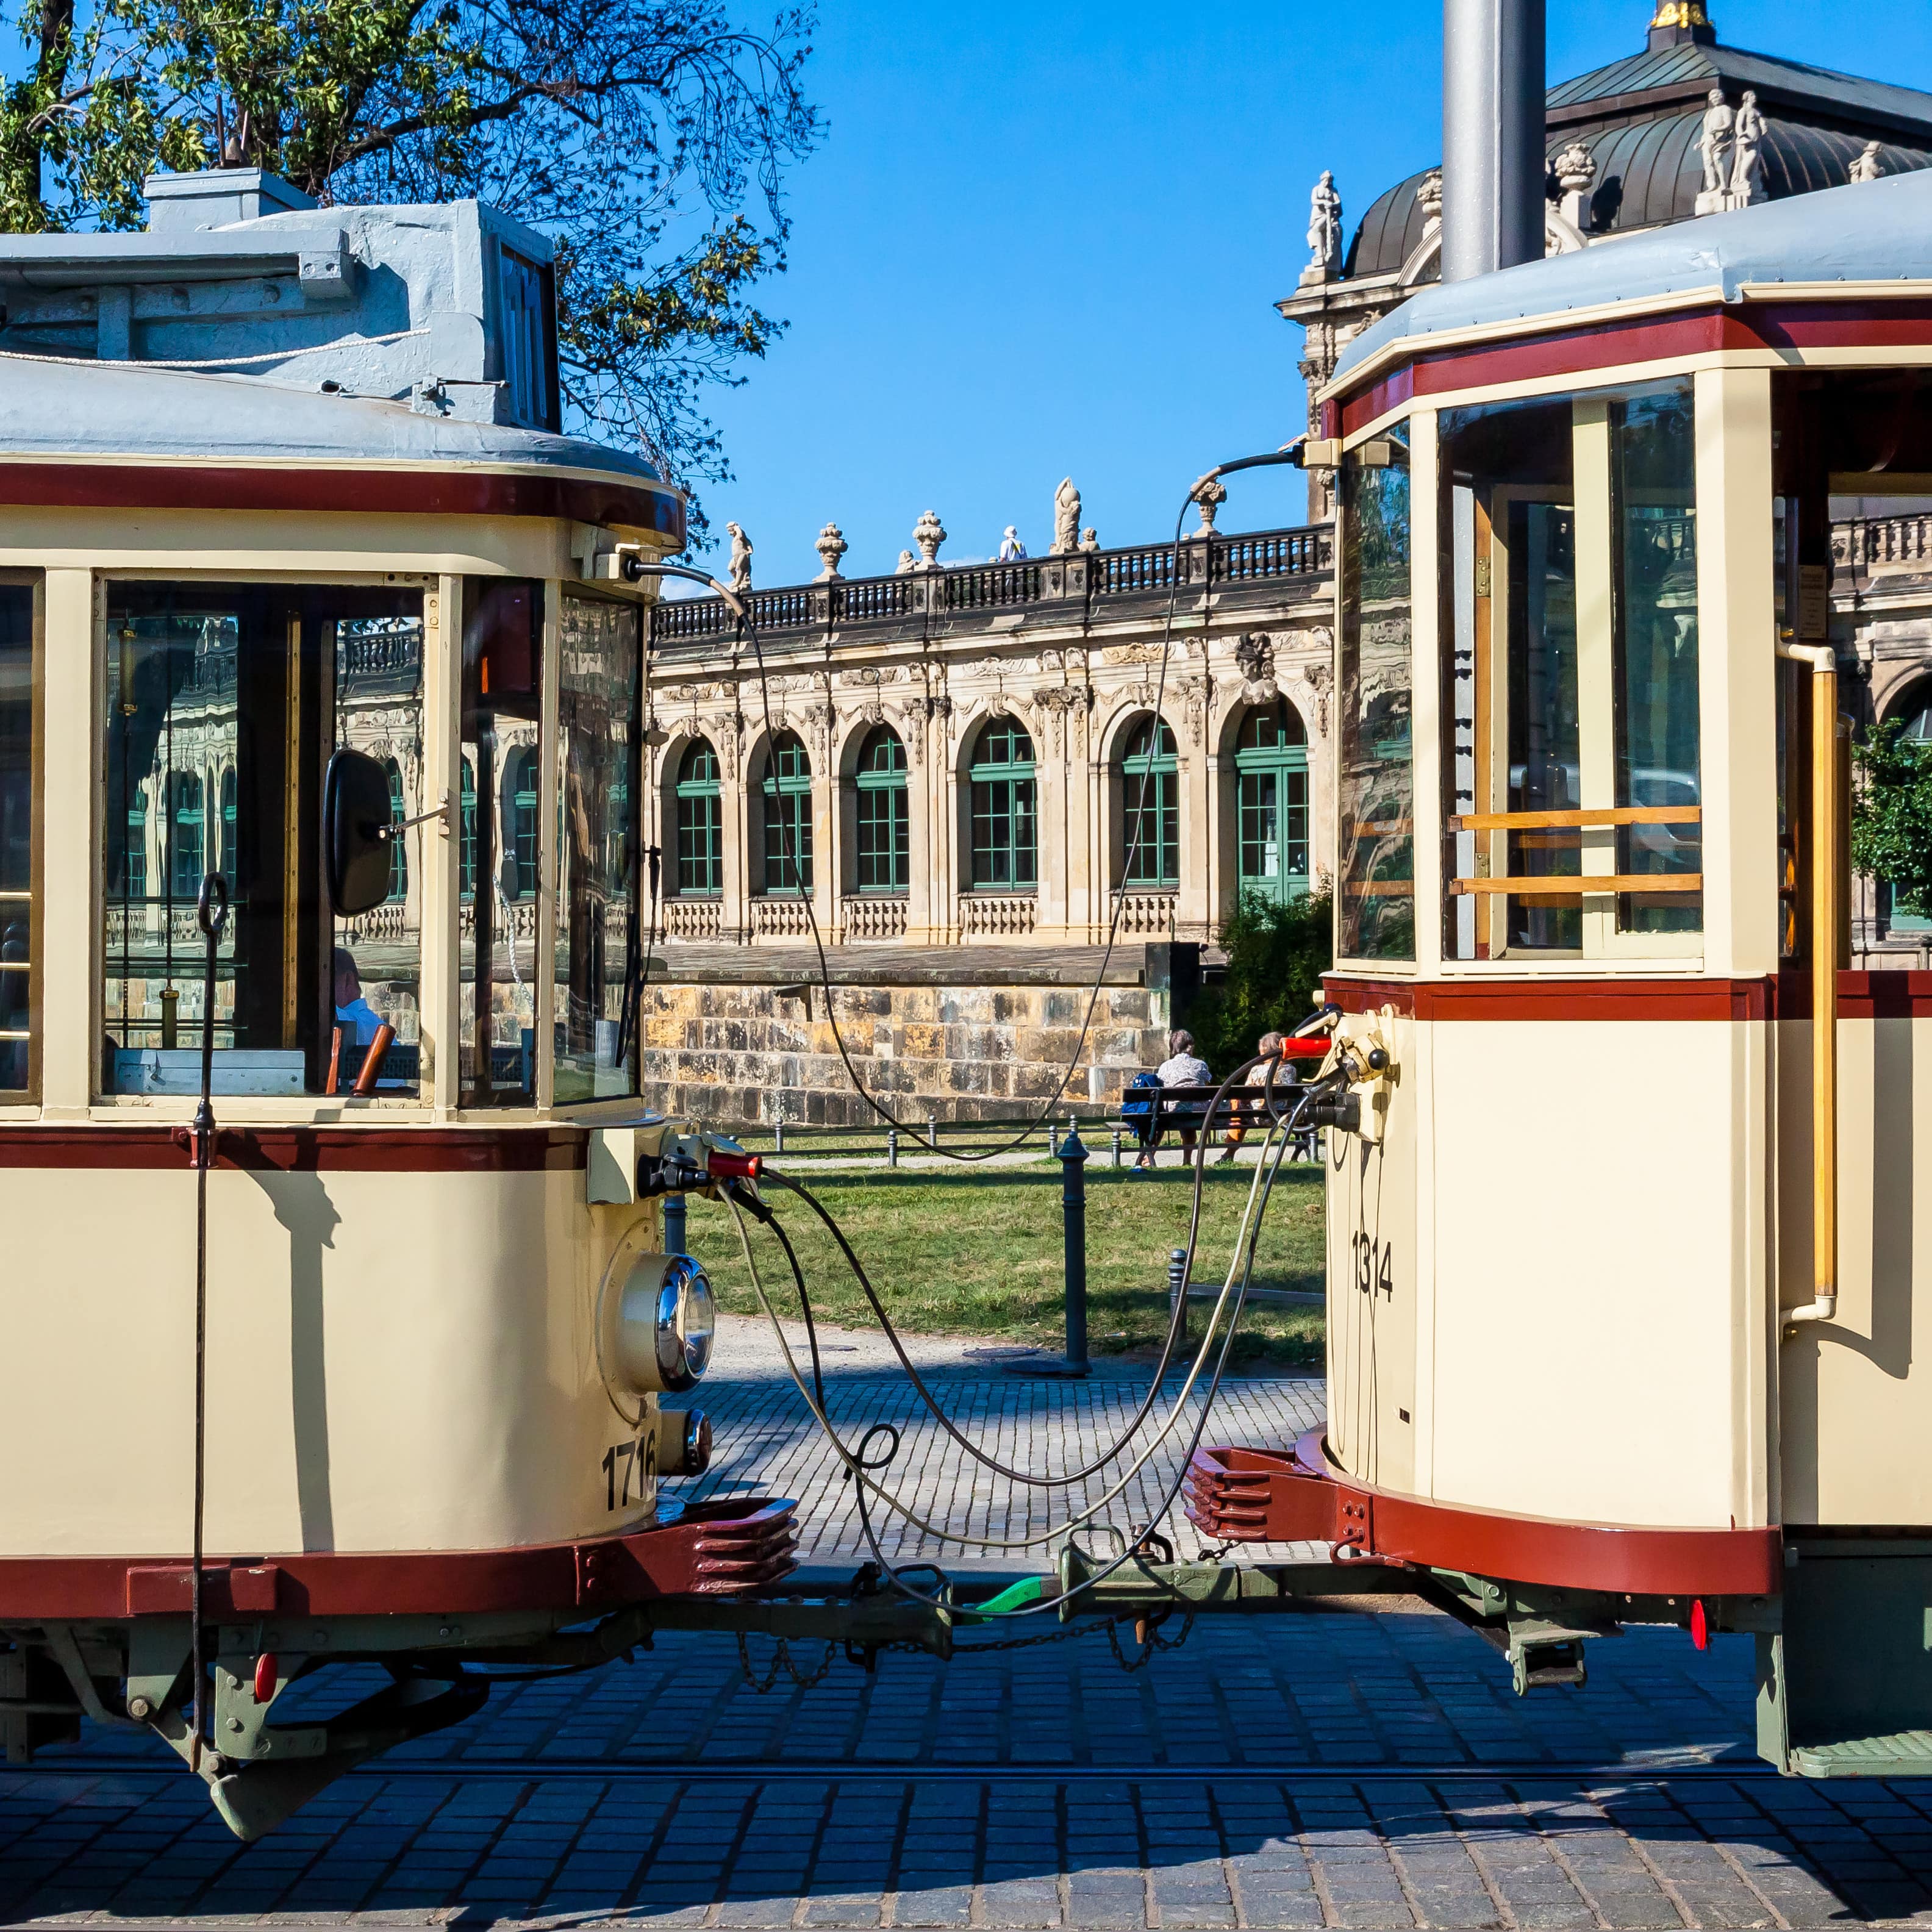 Eine historische Straßenbahn, zwischen 2 Wagen sind eine Wiese und ein Altbau zu sehen.